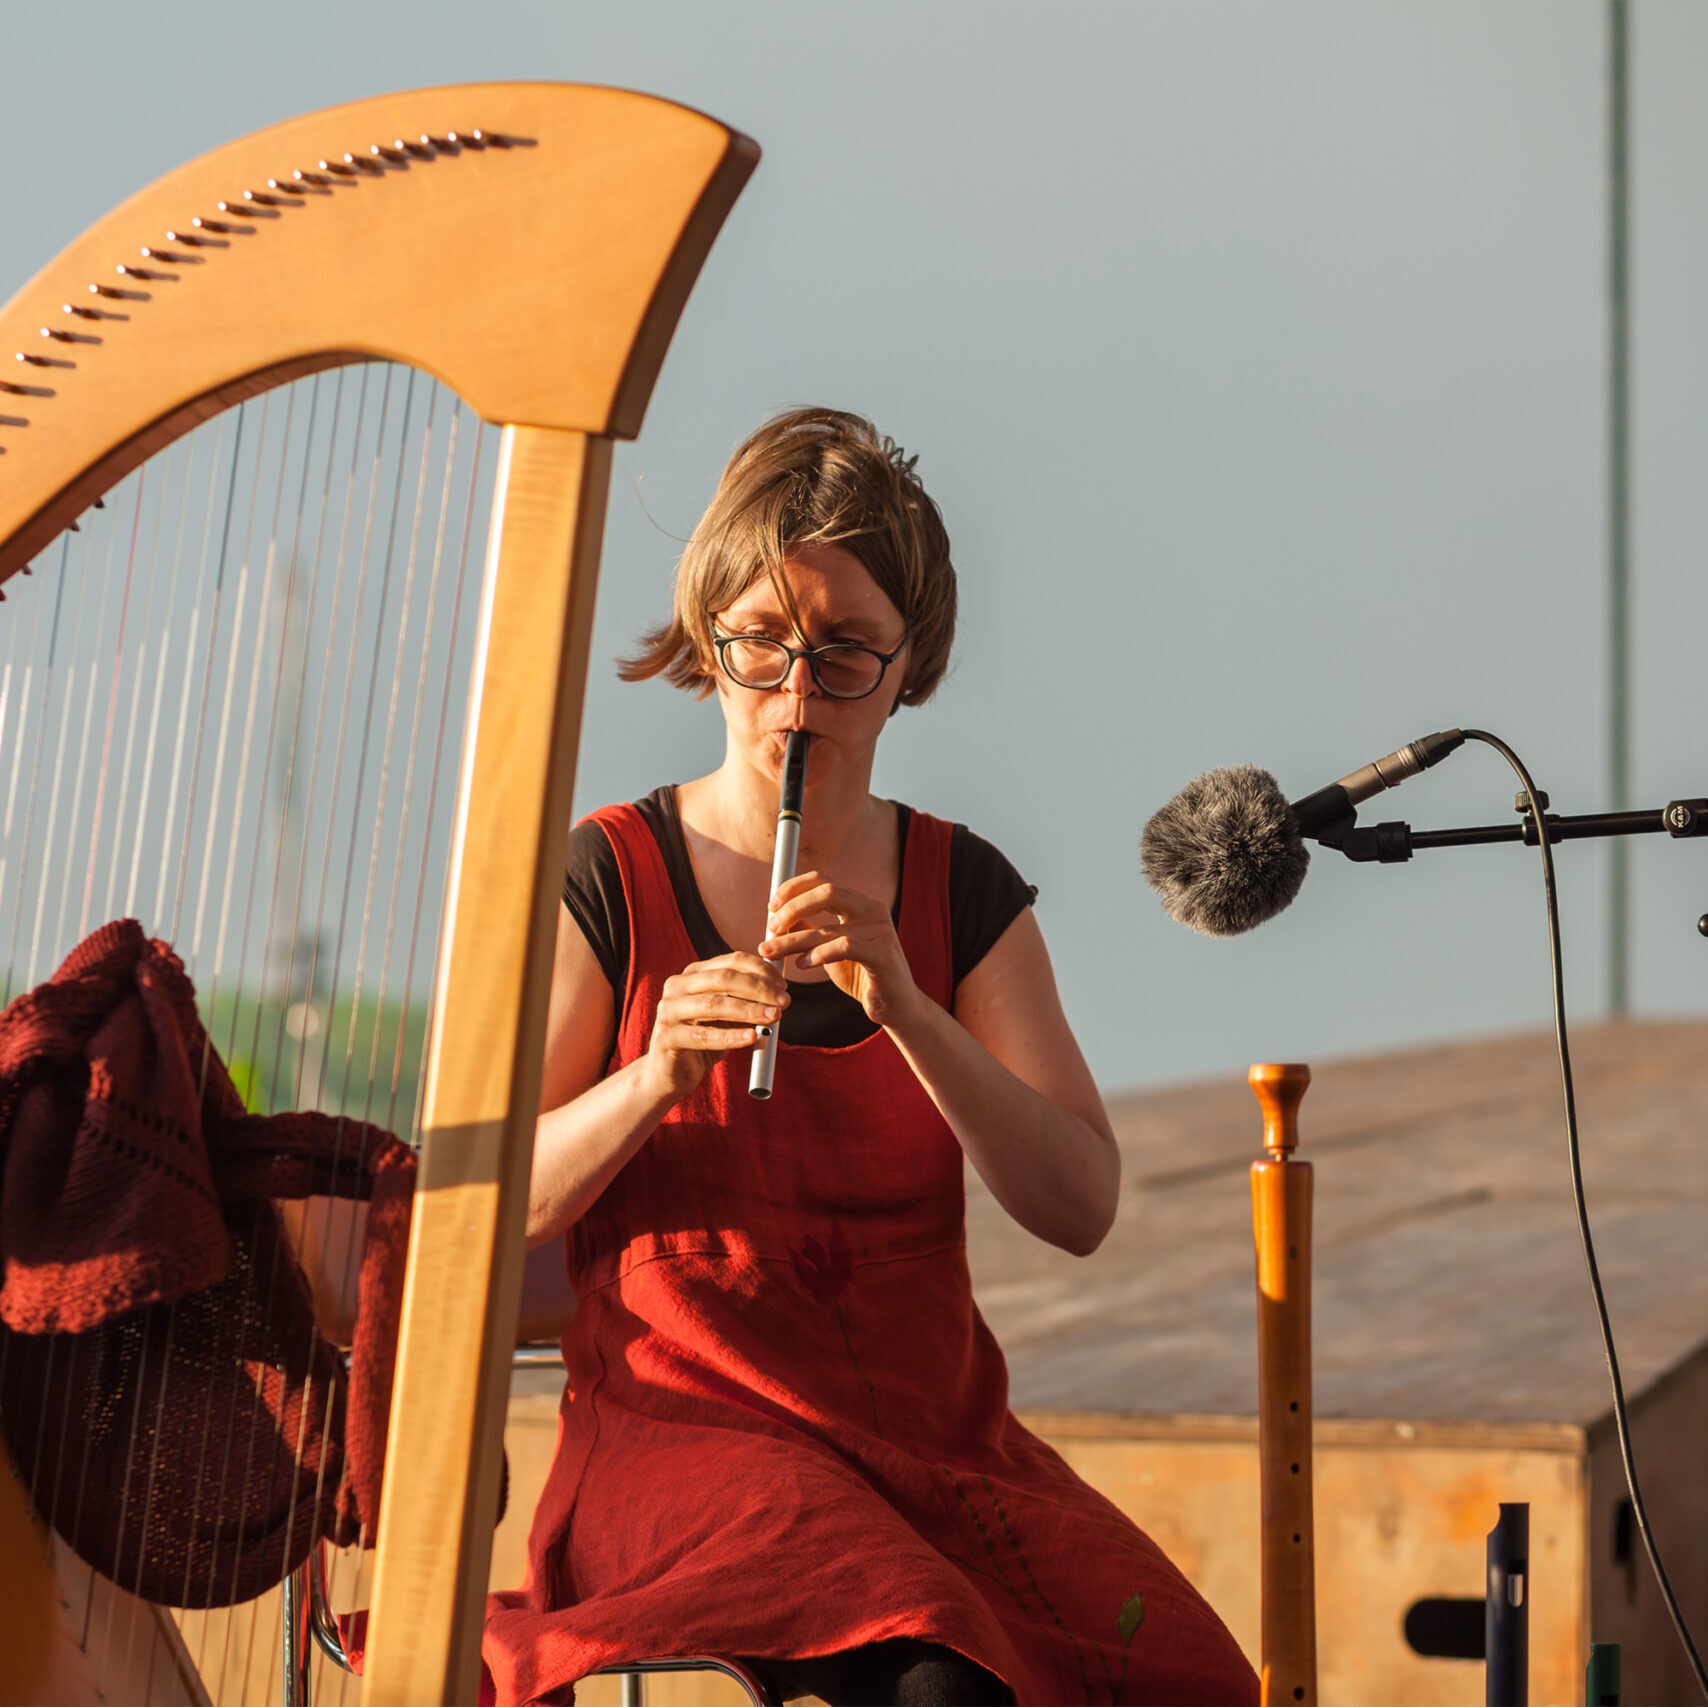 Katharina Hölzel spielt im Wind auf einer irischen Whistle. Neben ihr steht eine Hakenharfe deren Saiten von einem Tuch schützend durchwoben sind.